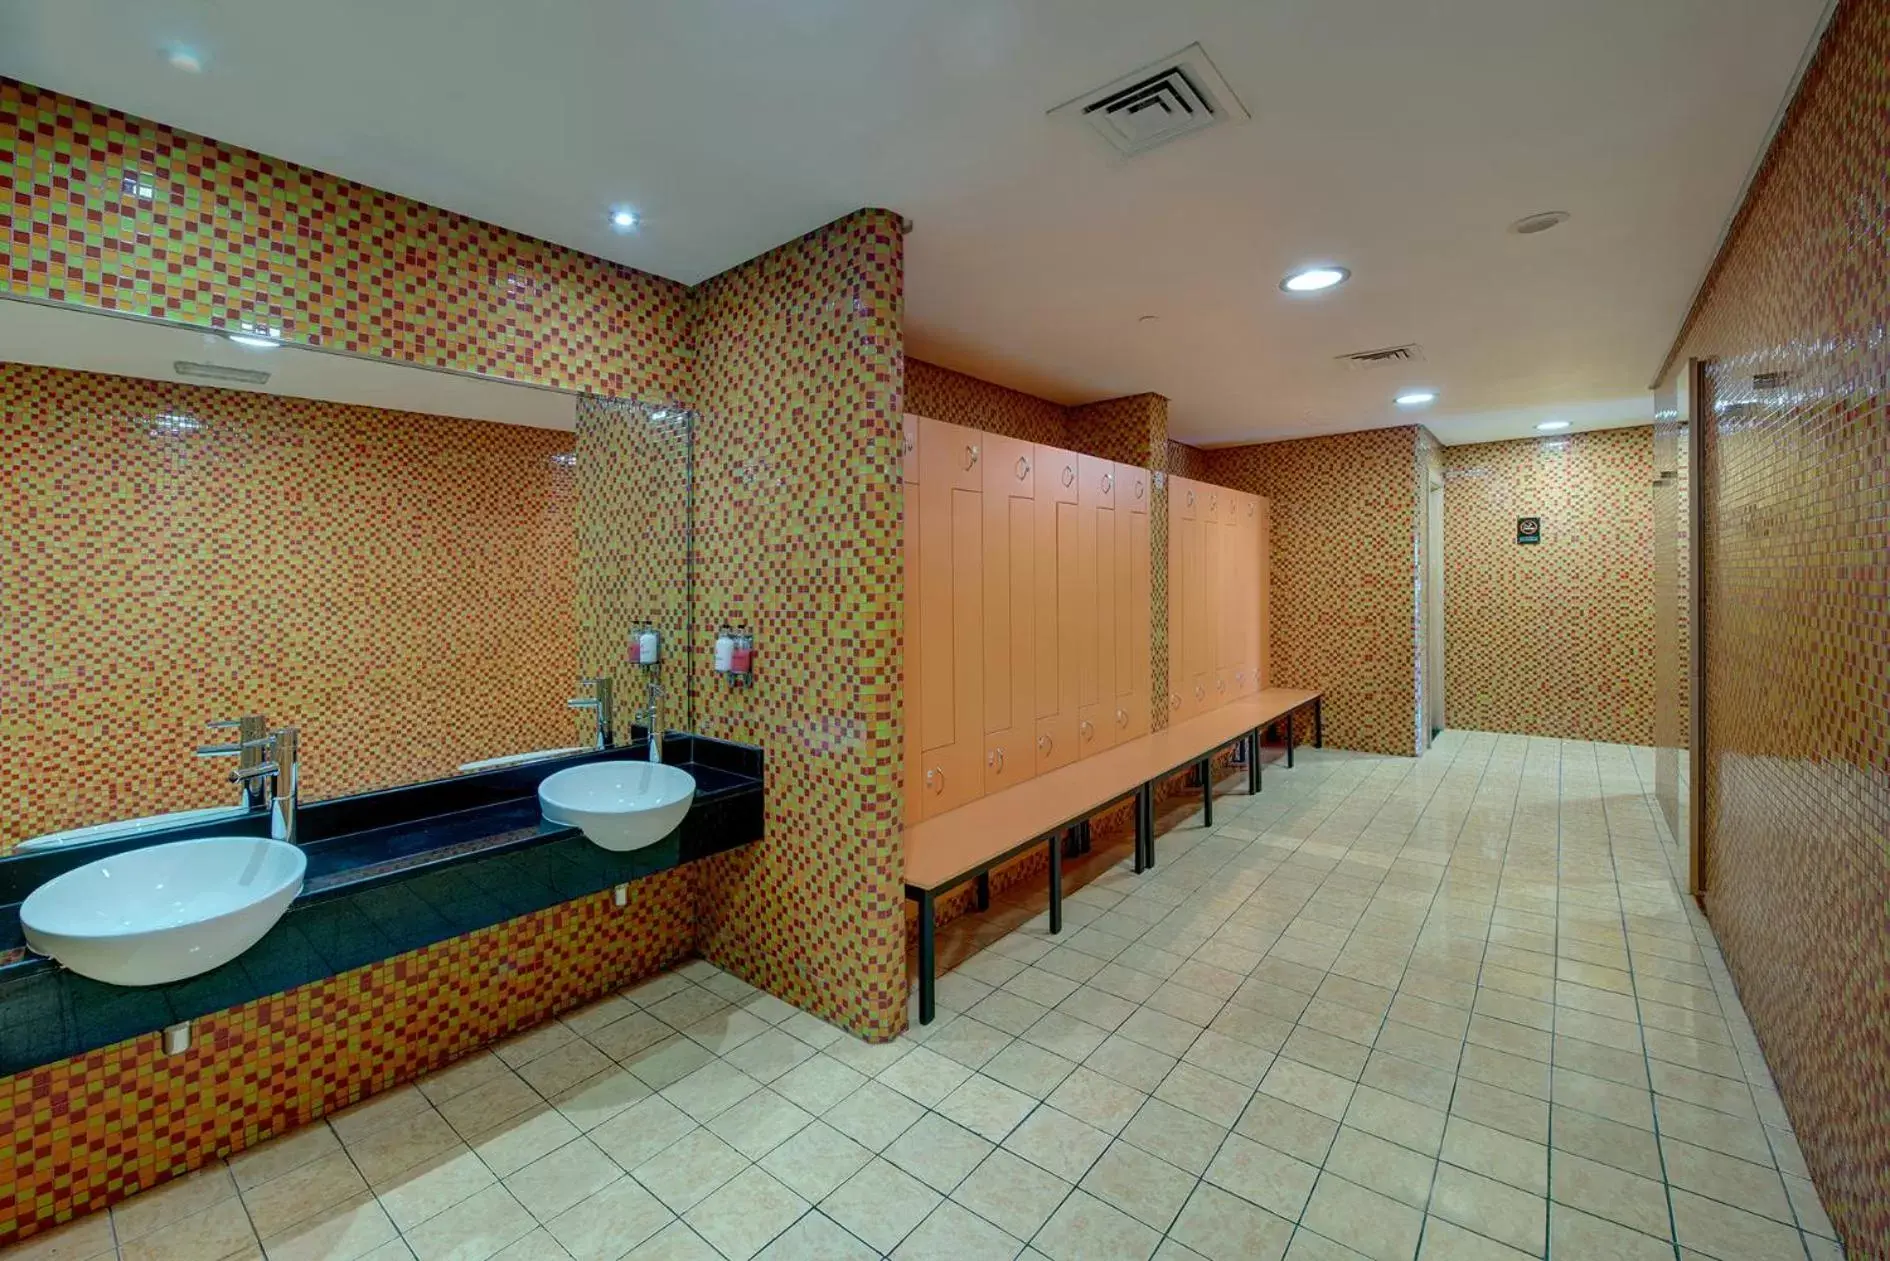 Area and facilities, Bathroom in Al Khoory Executive Hotel, Al Wasl